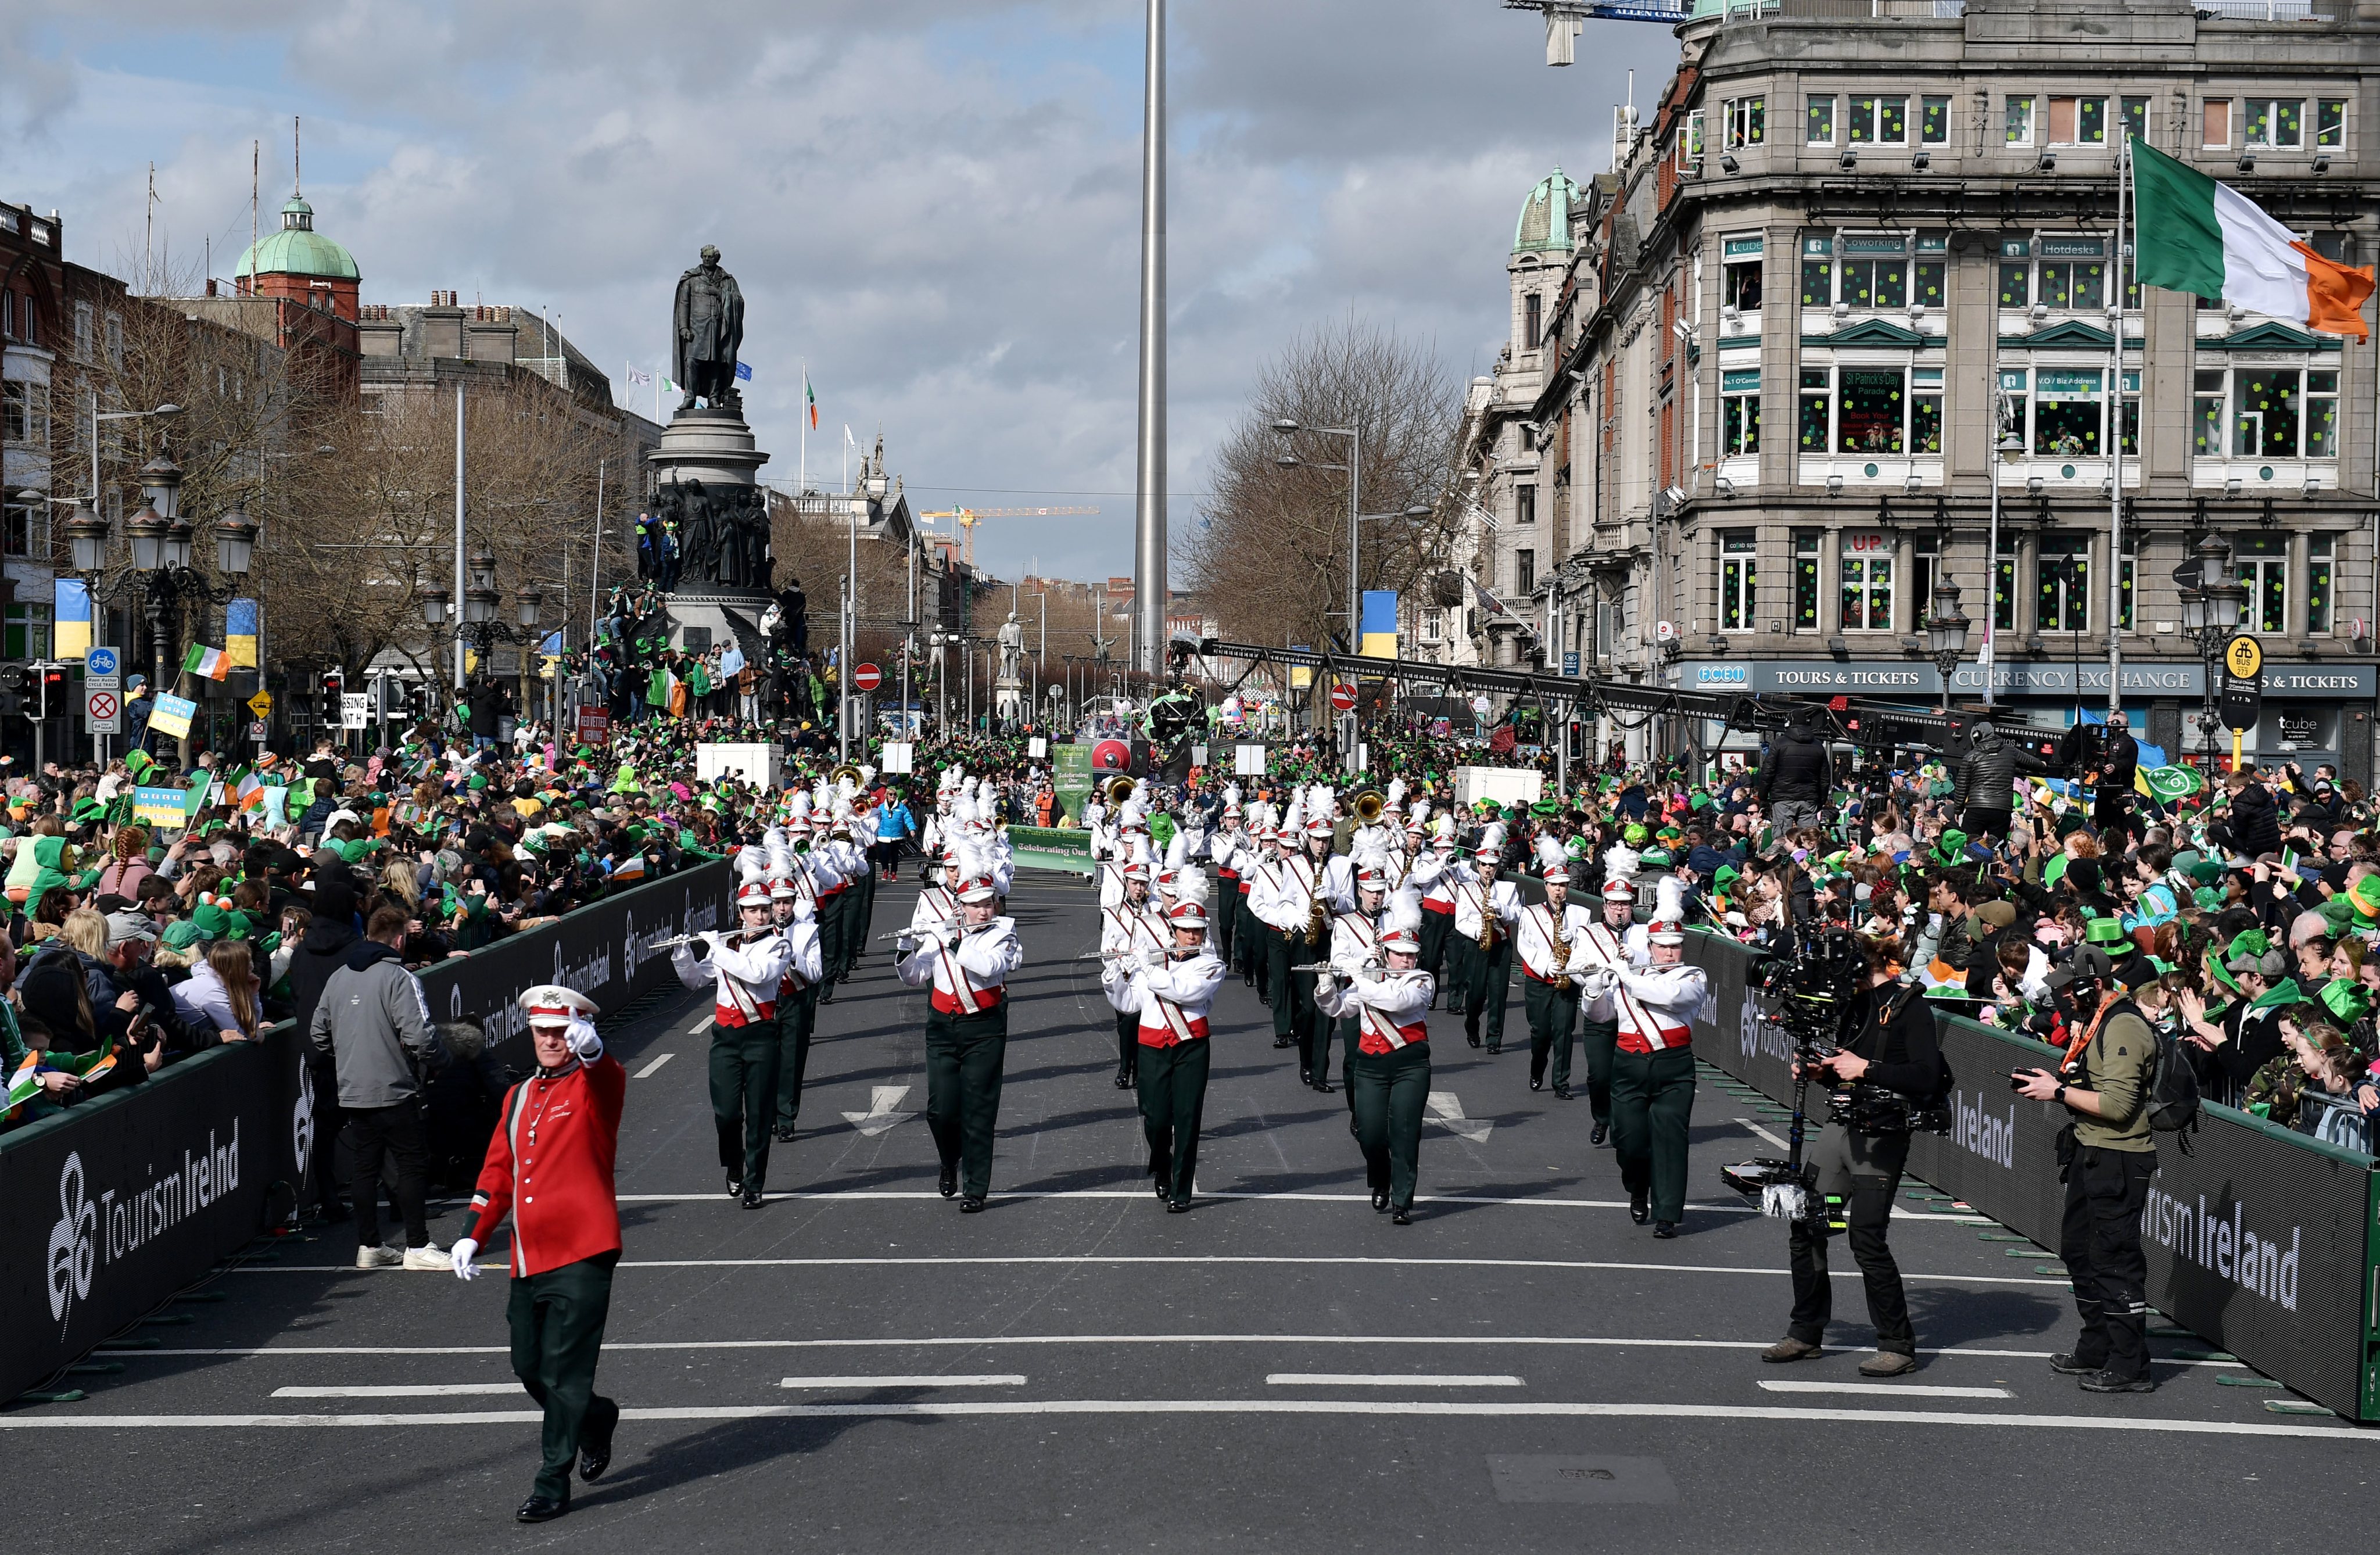 A marcha do Dia de São Patrício em Dublin, na Irlanda